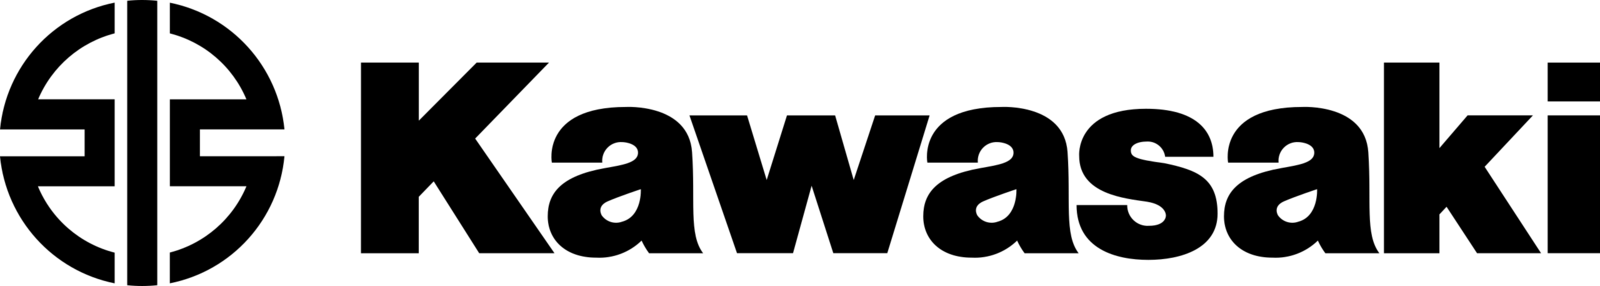 Kawasaki-logo.svg.png